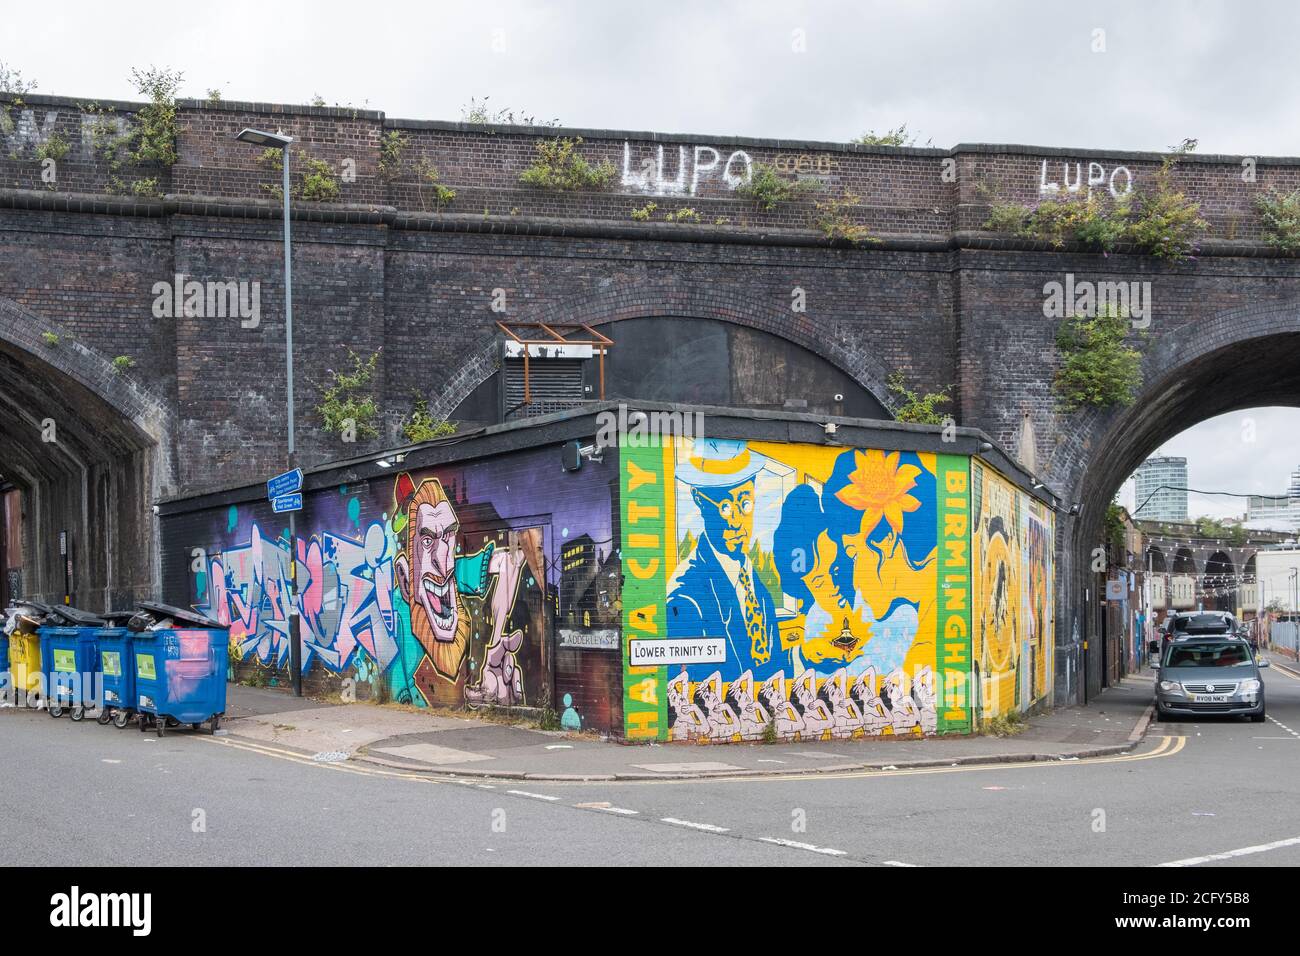 Straßenkunst auf Backsteinmauer an der Ecke der Adderley Street und Lower Trinity Street in Digbeth, Birmingham, Großbritannien Stockfoto